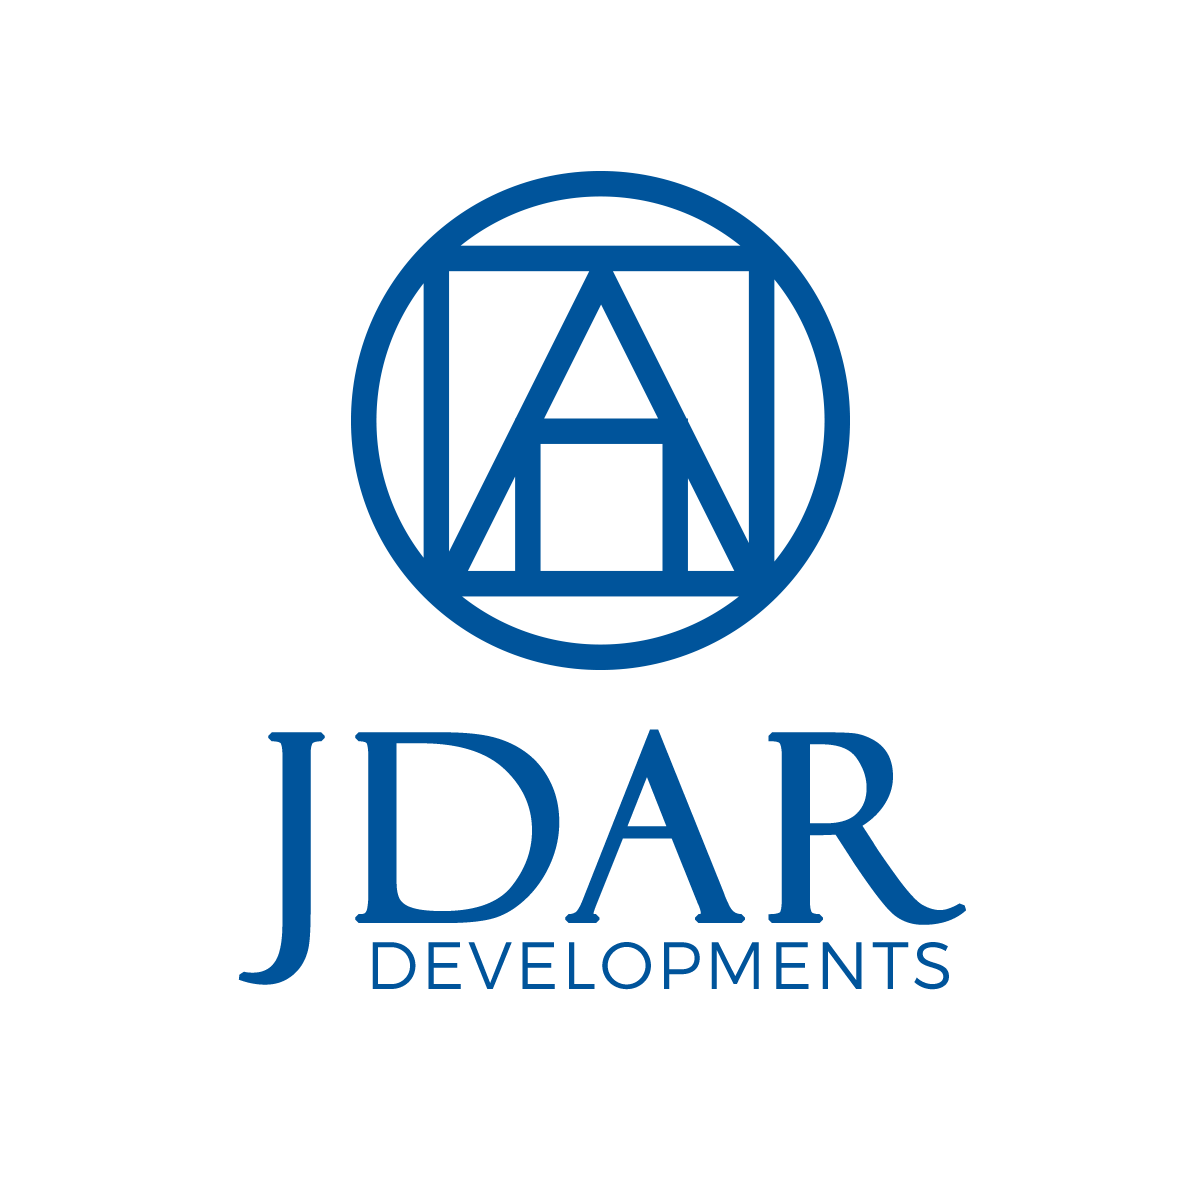 JDAR Development co.